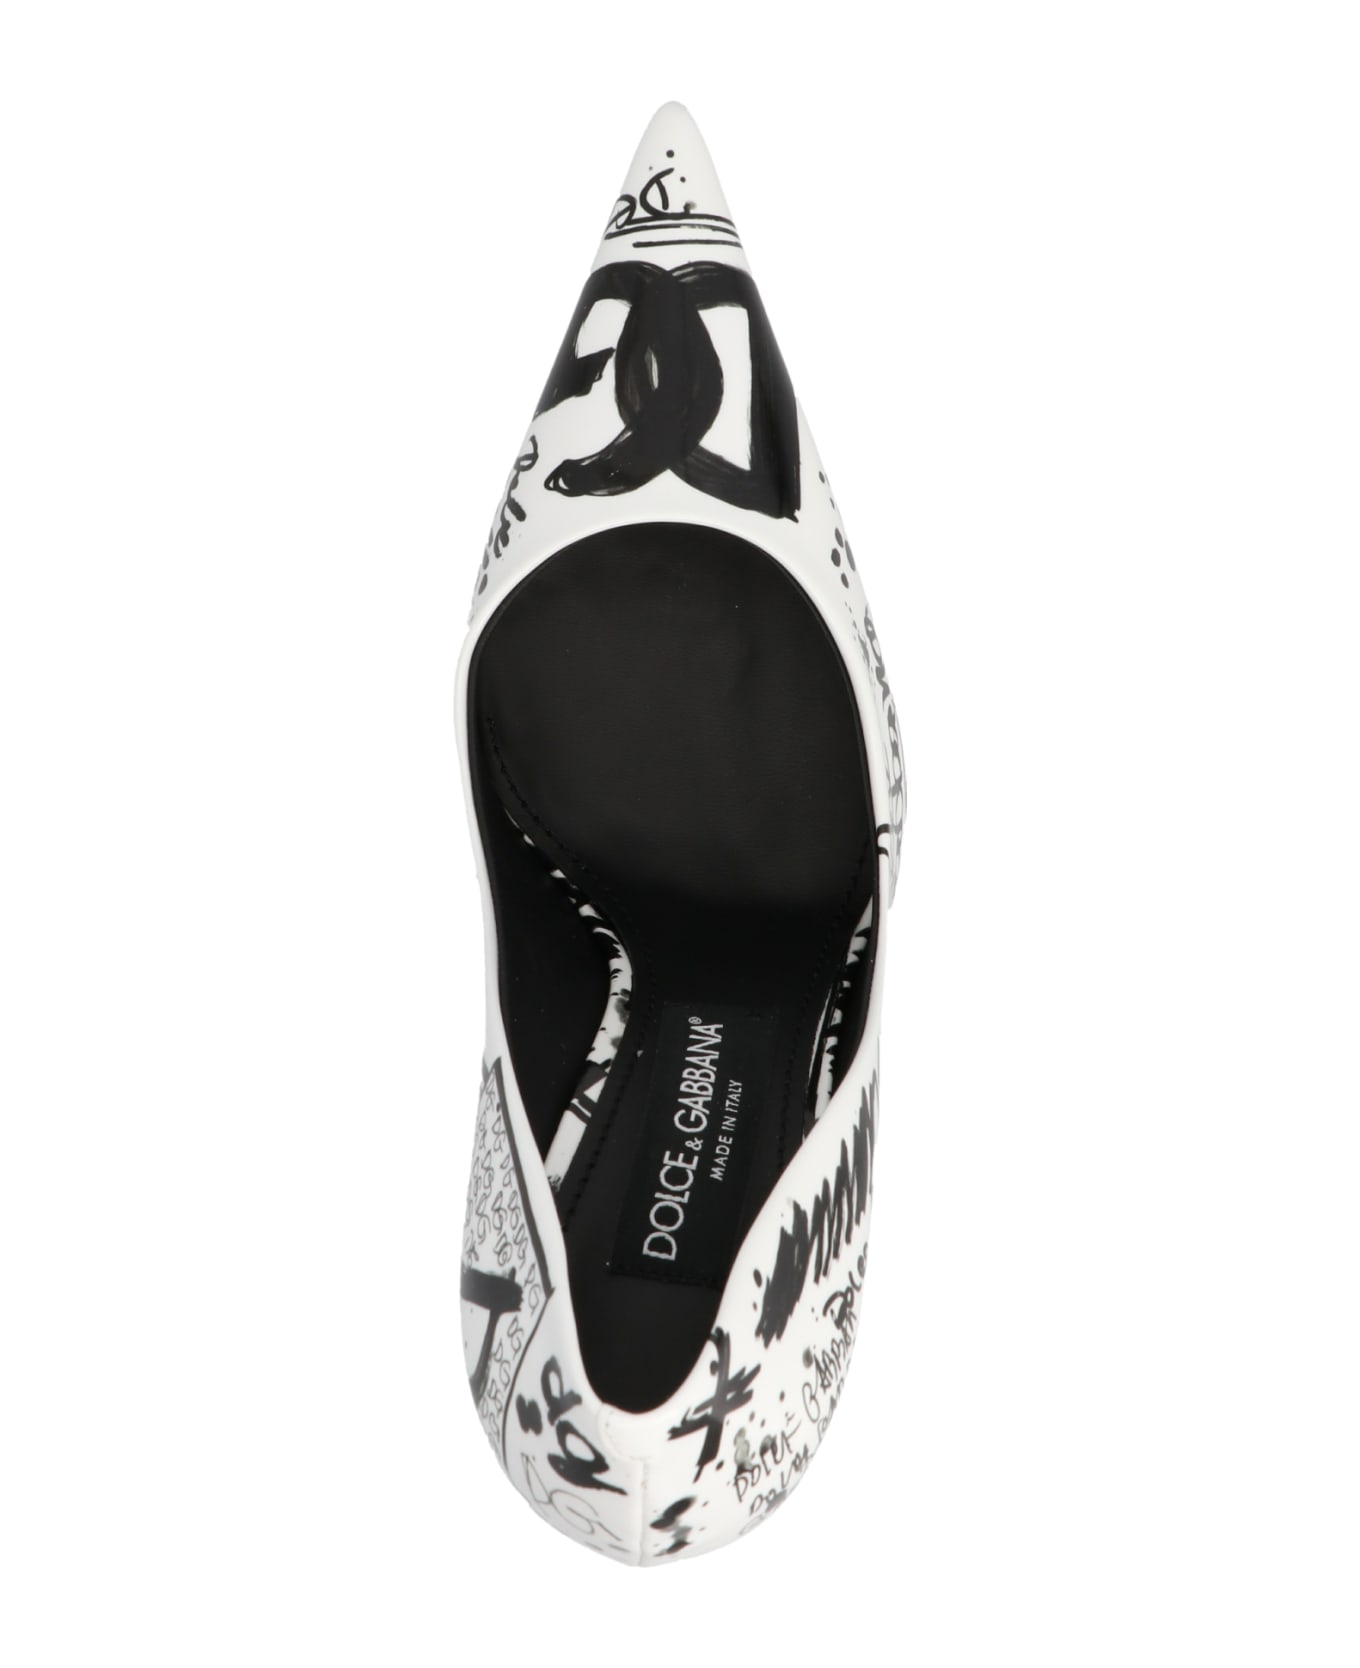 Dolce & Gabbana Logo Print Pumps - White/Black